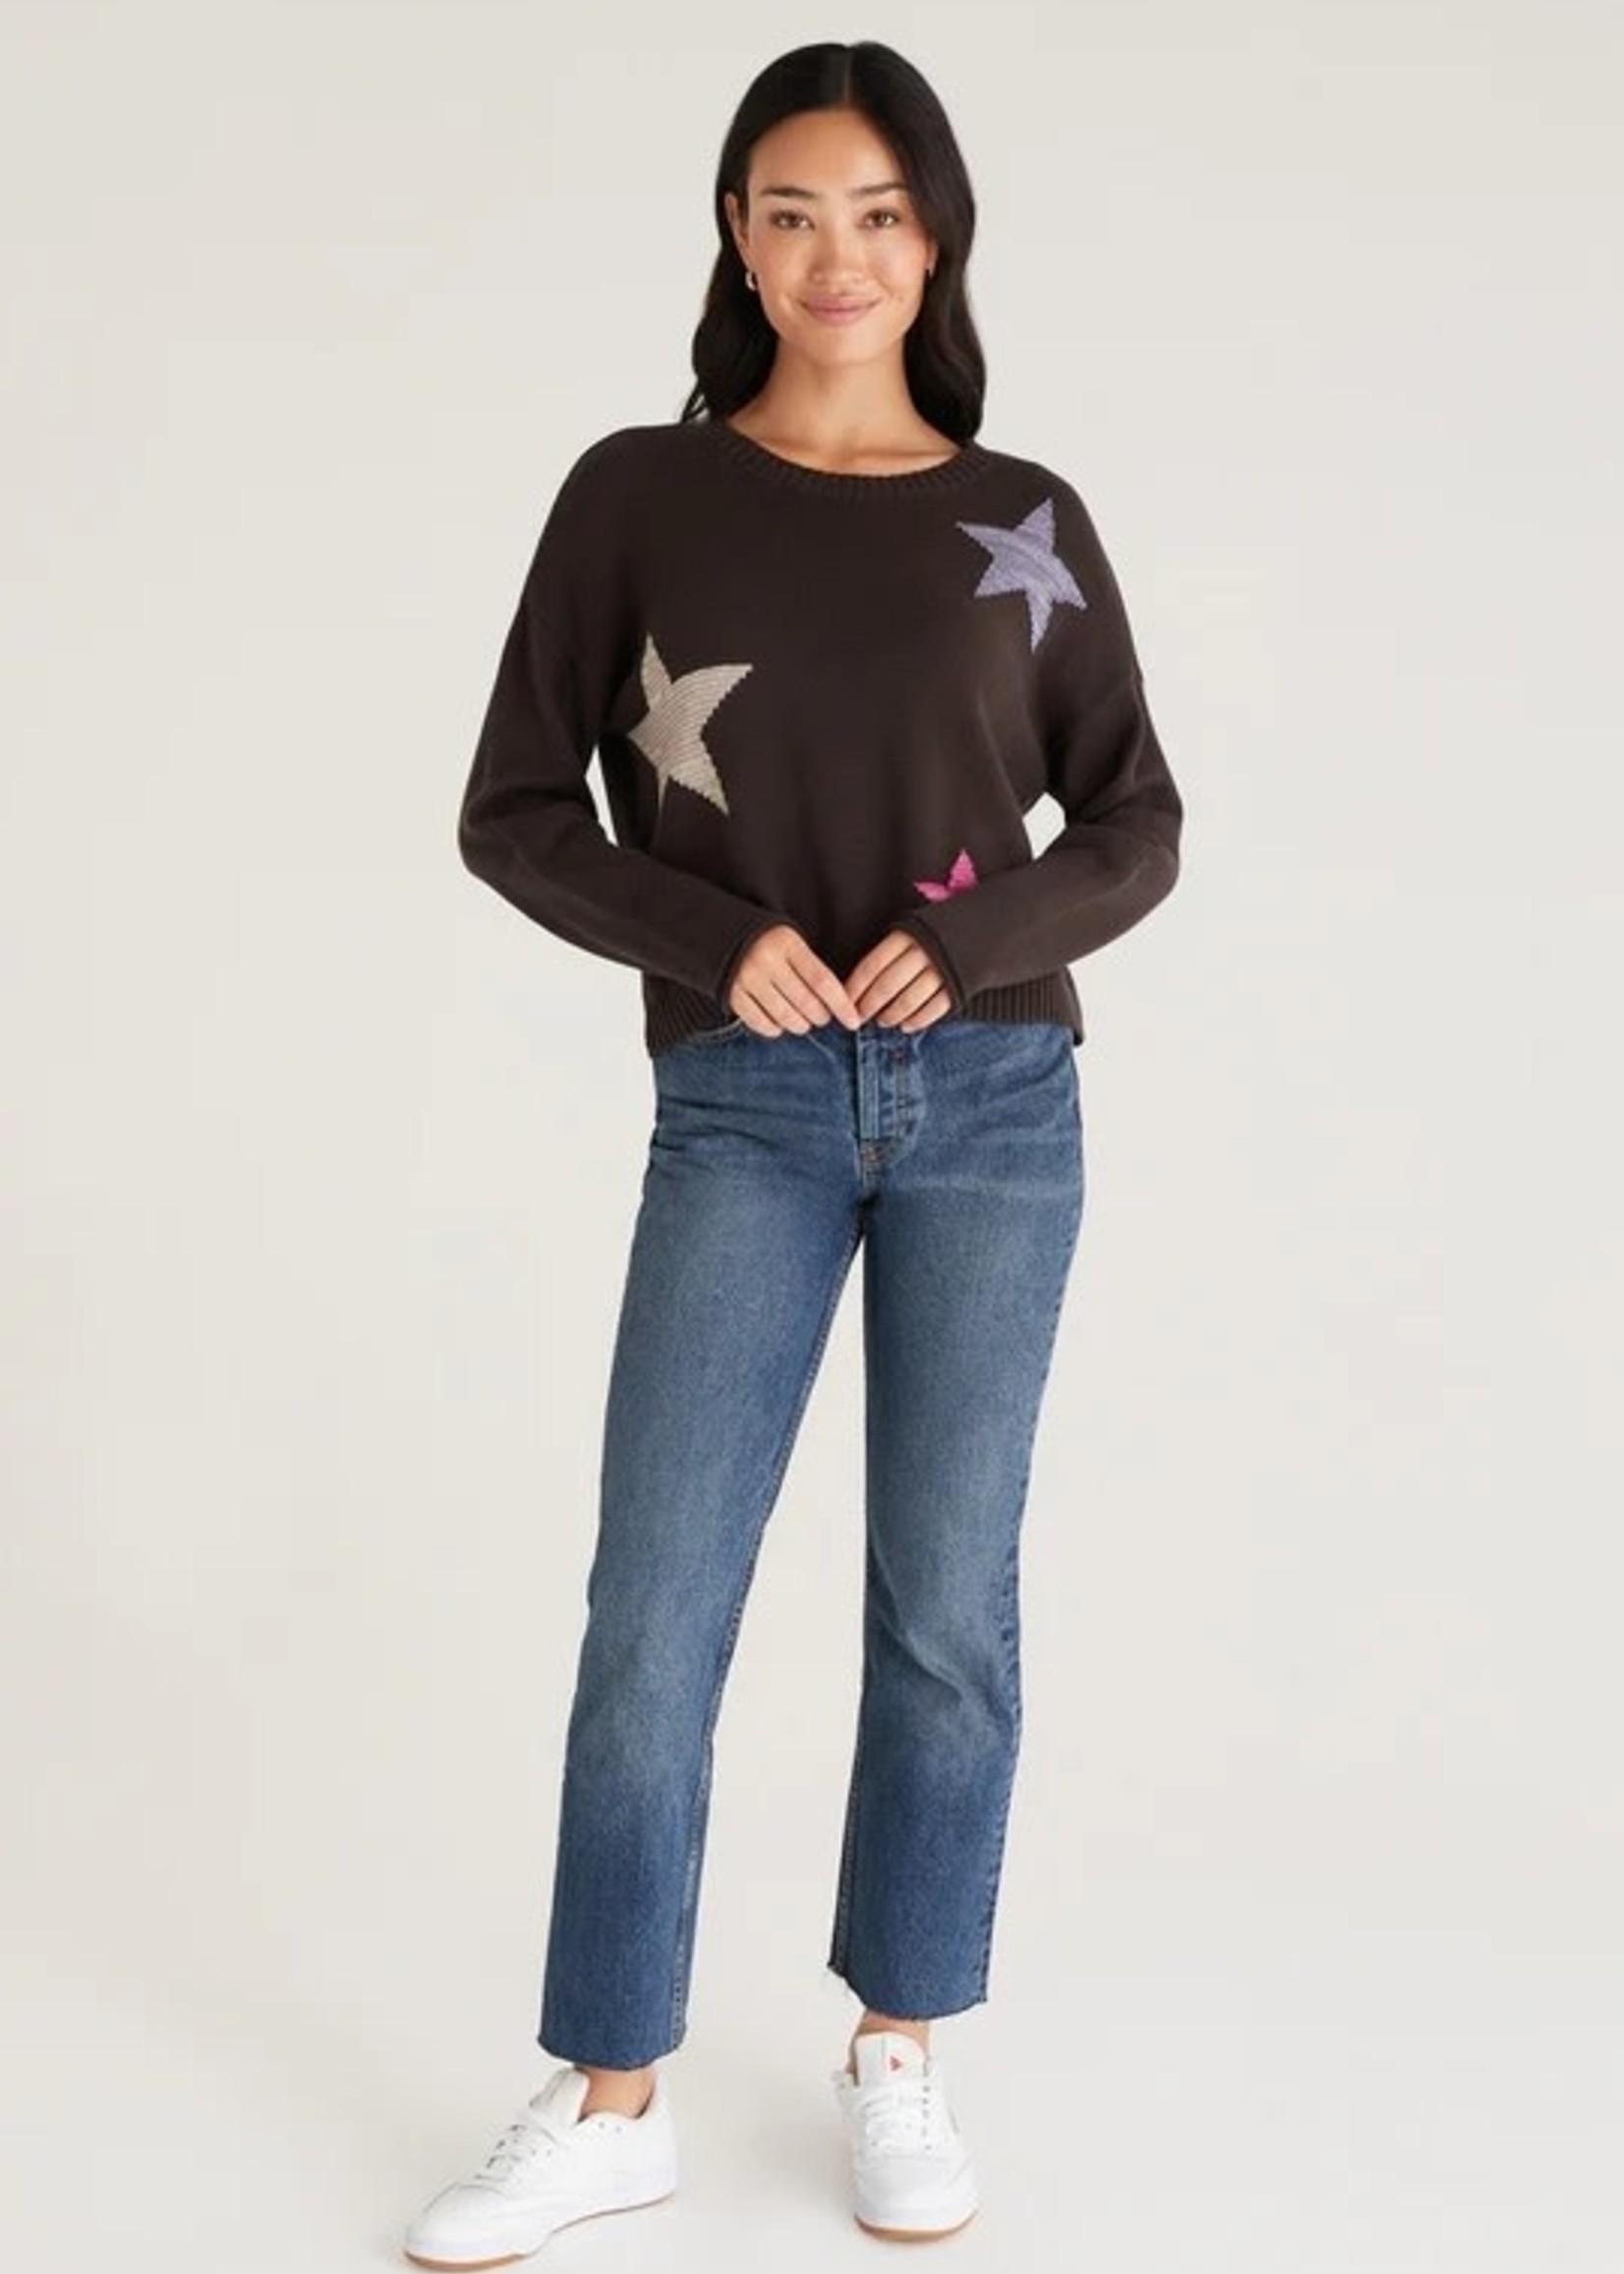 Z supply Sienna Marled Sweater